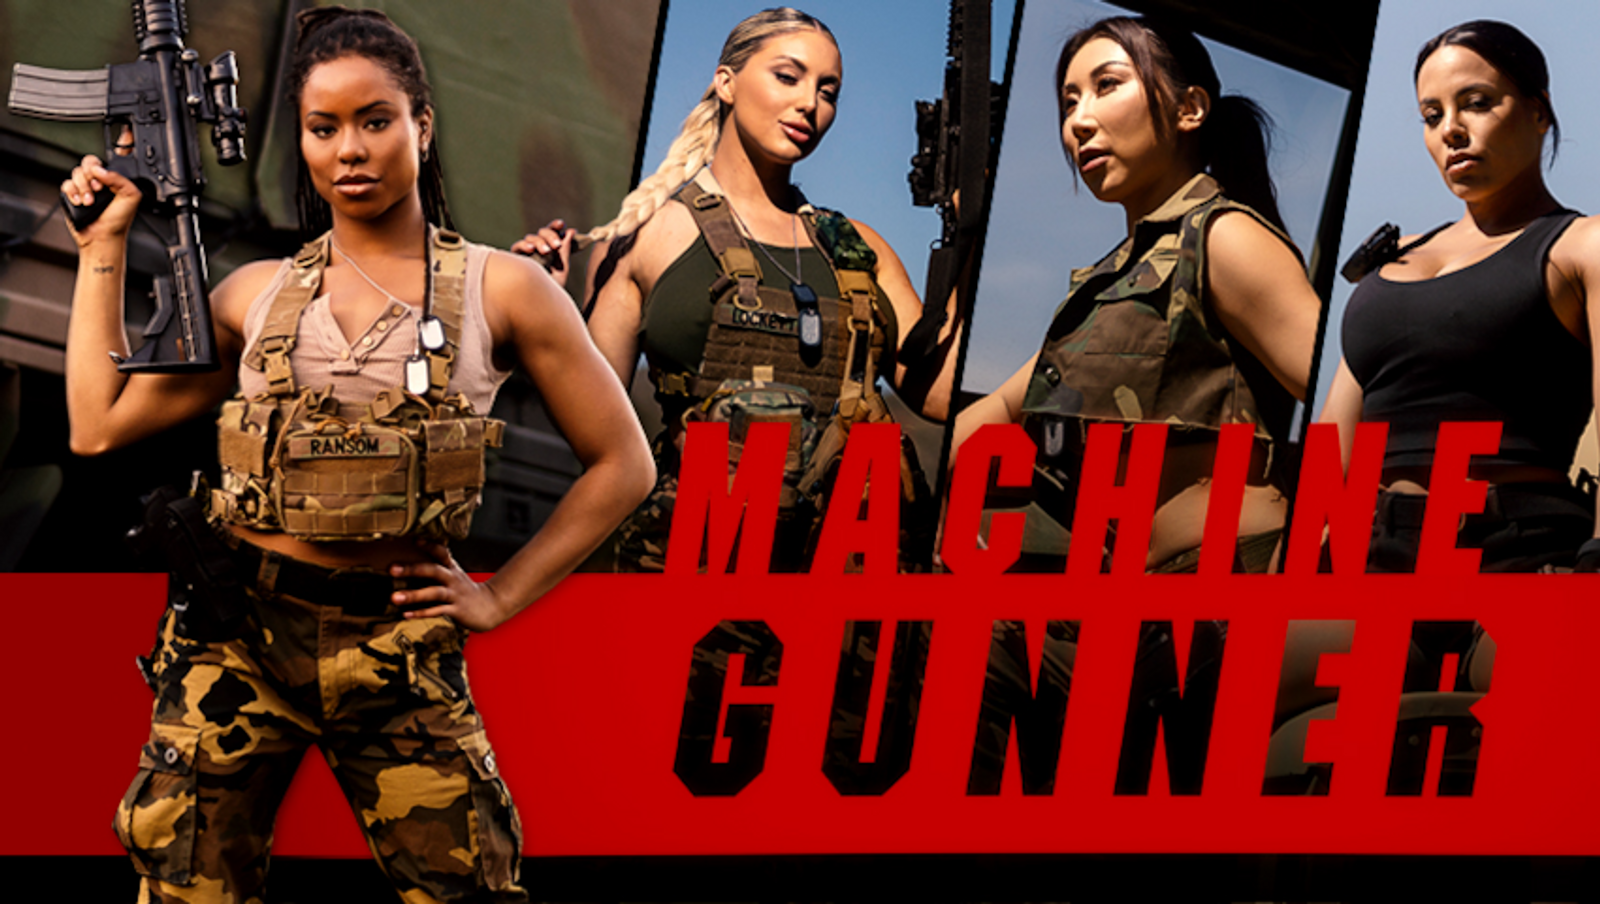 Dpxxx - Digital Playground Unveils 'Machine Gunner' | AVN